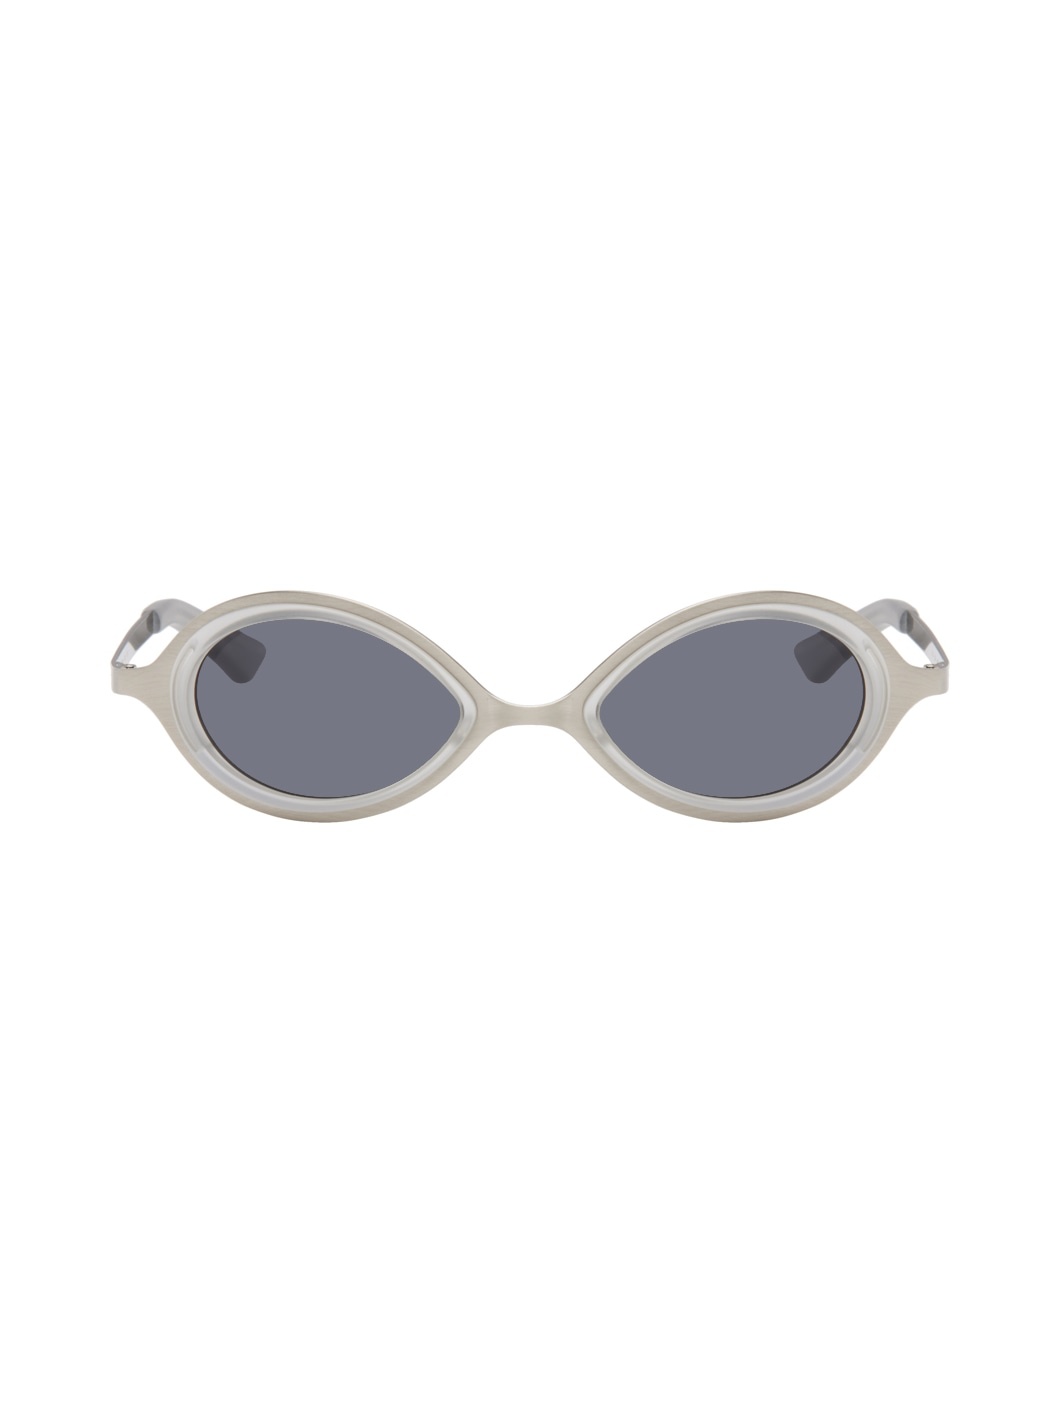 SSENSE Exclusive Silver 'The Goggle' Sunglasses - 1